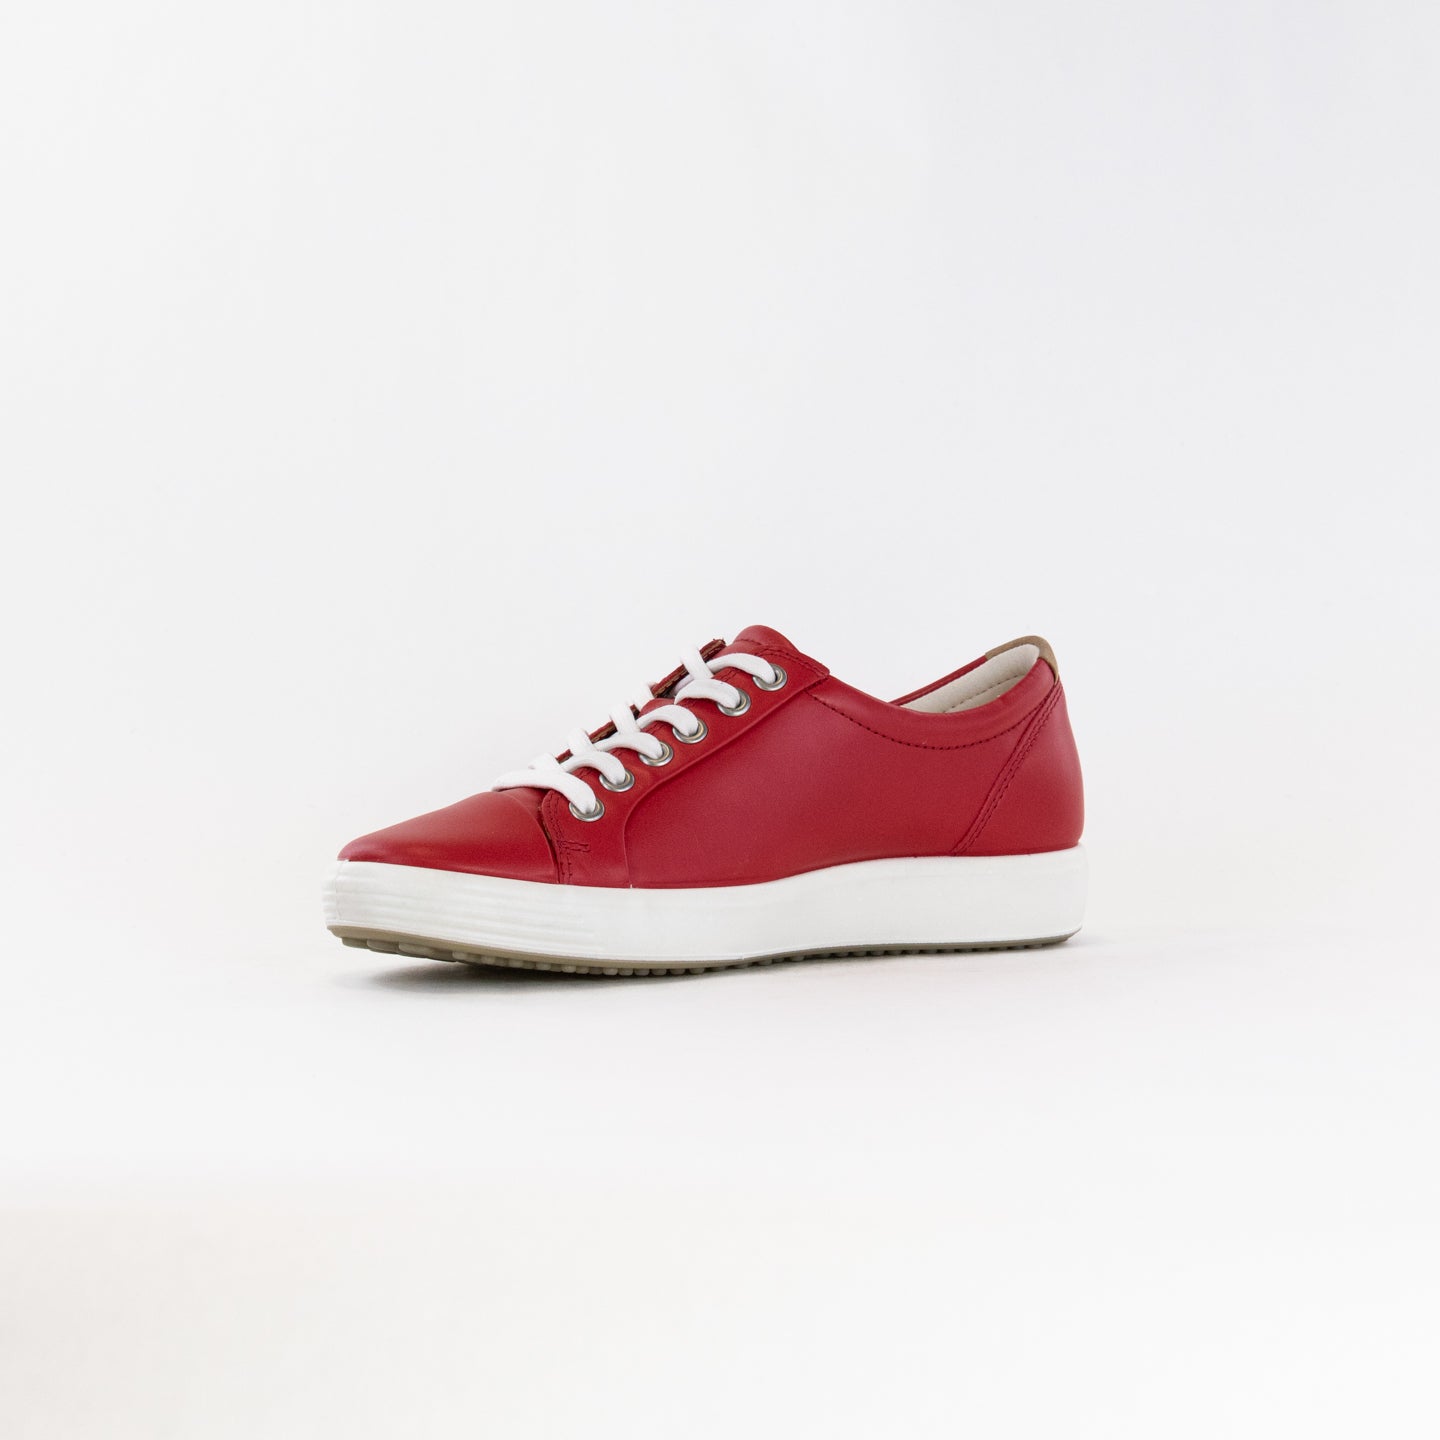 Ecco Soft 7 Sneaker (Women's) - Chili Red